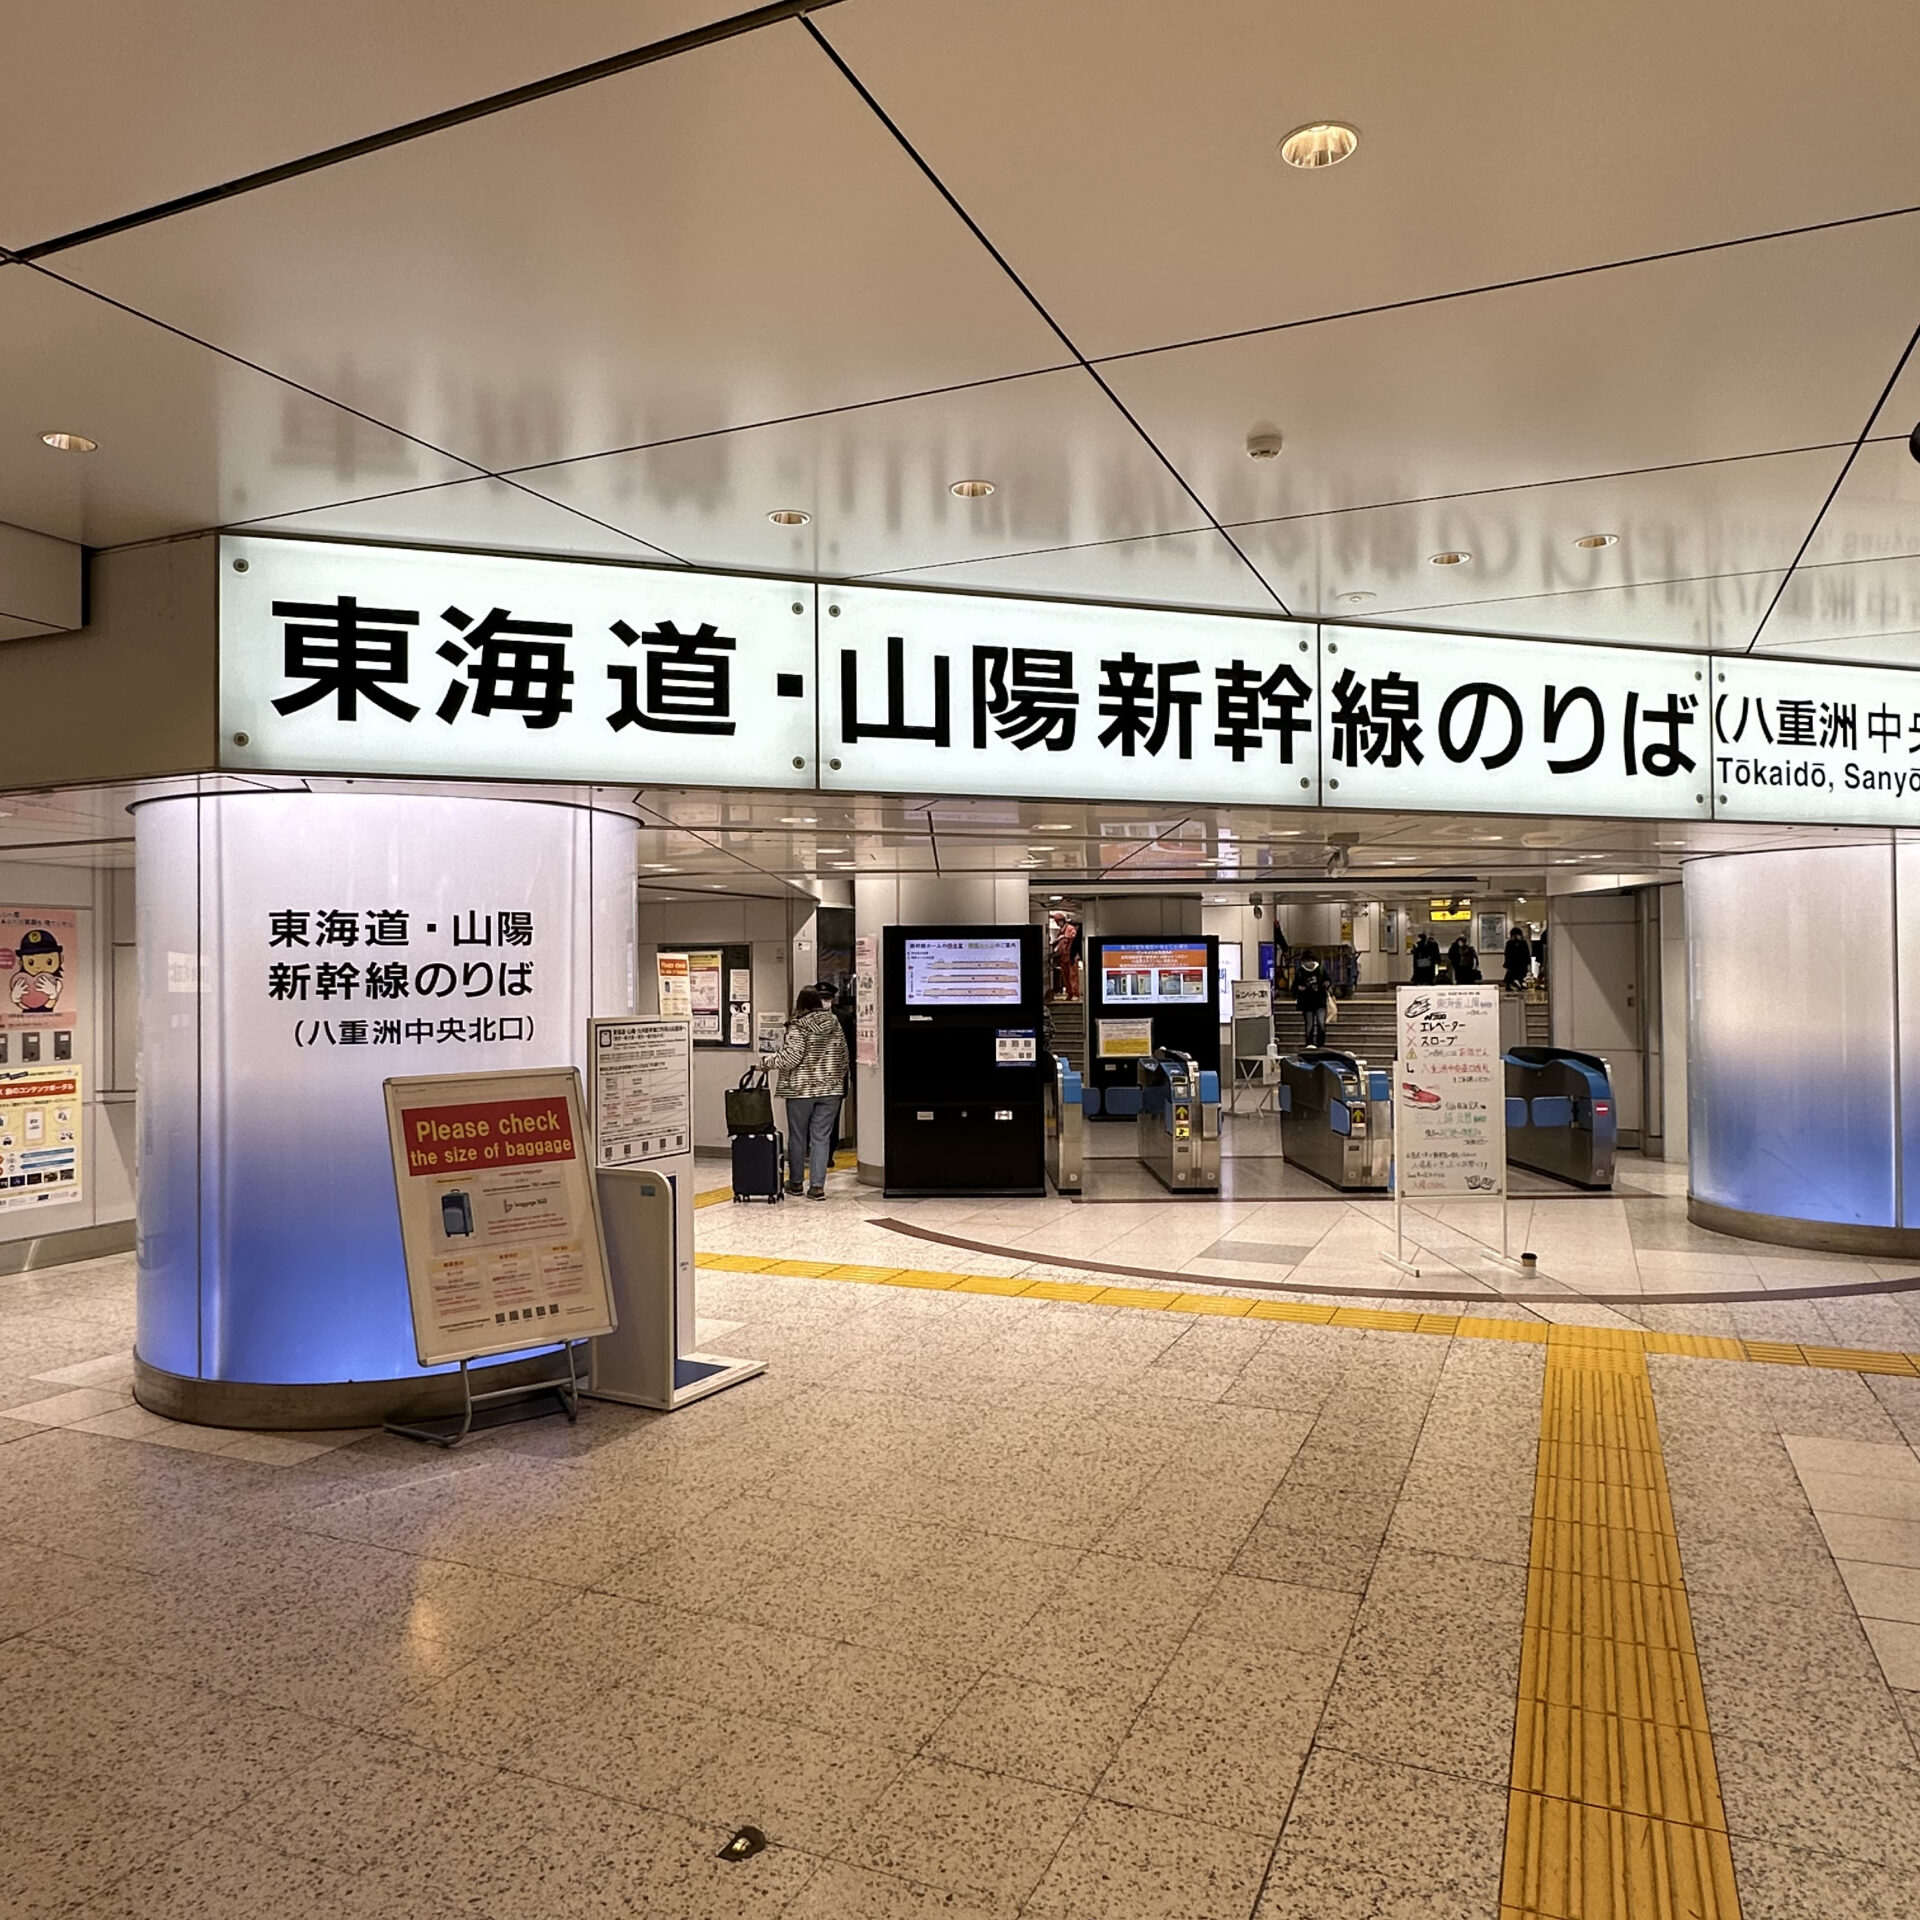 東海道新幹線東京駅改札口